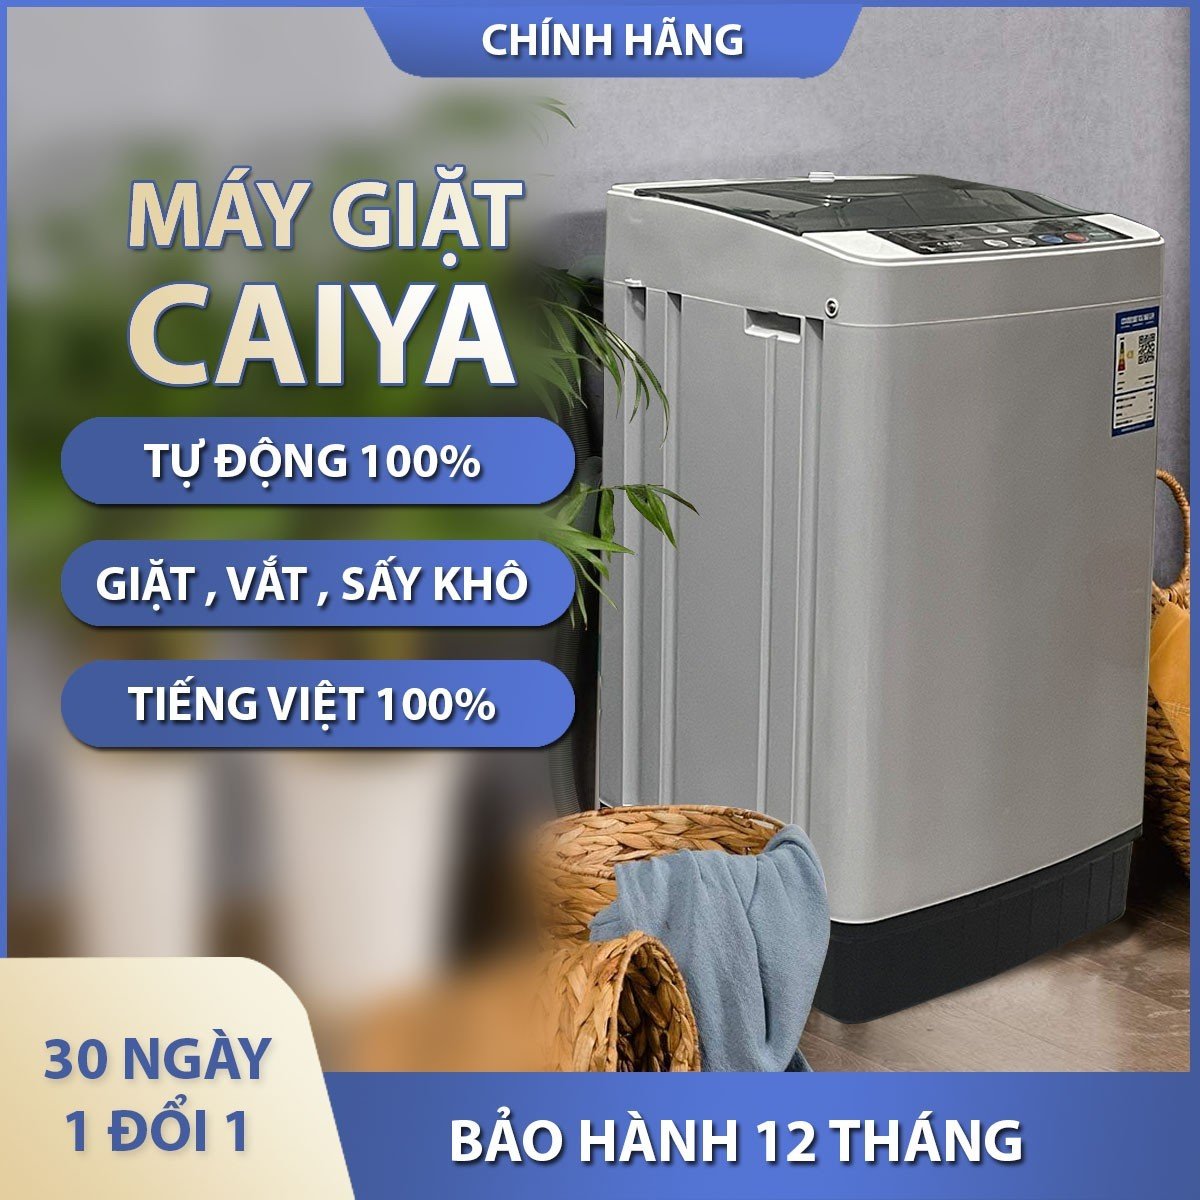 Máy giặt mini CAIYA  Tiếng việt tự động 100%, giặt, vắt, sấy, giặt được 4-5kg - bảo hành 12 tháng lỗi 1 đổi 1